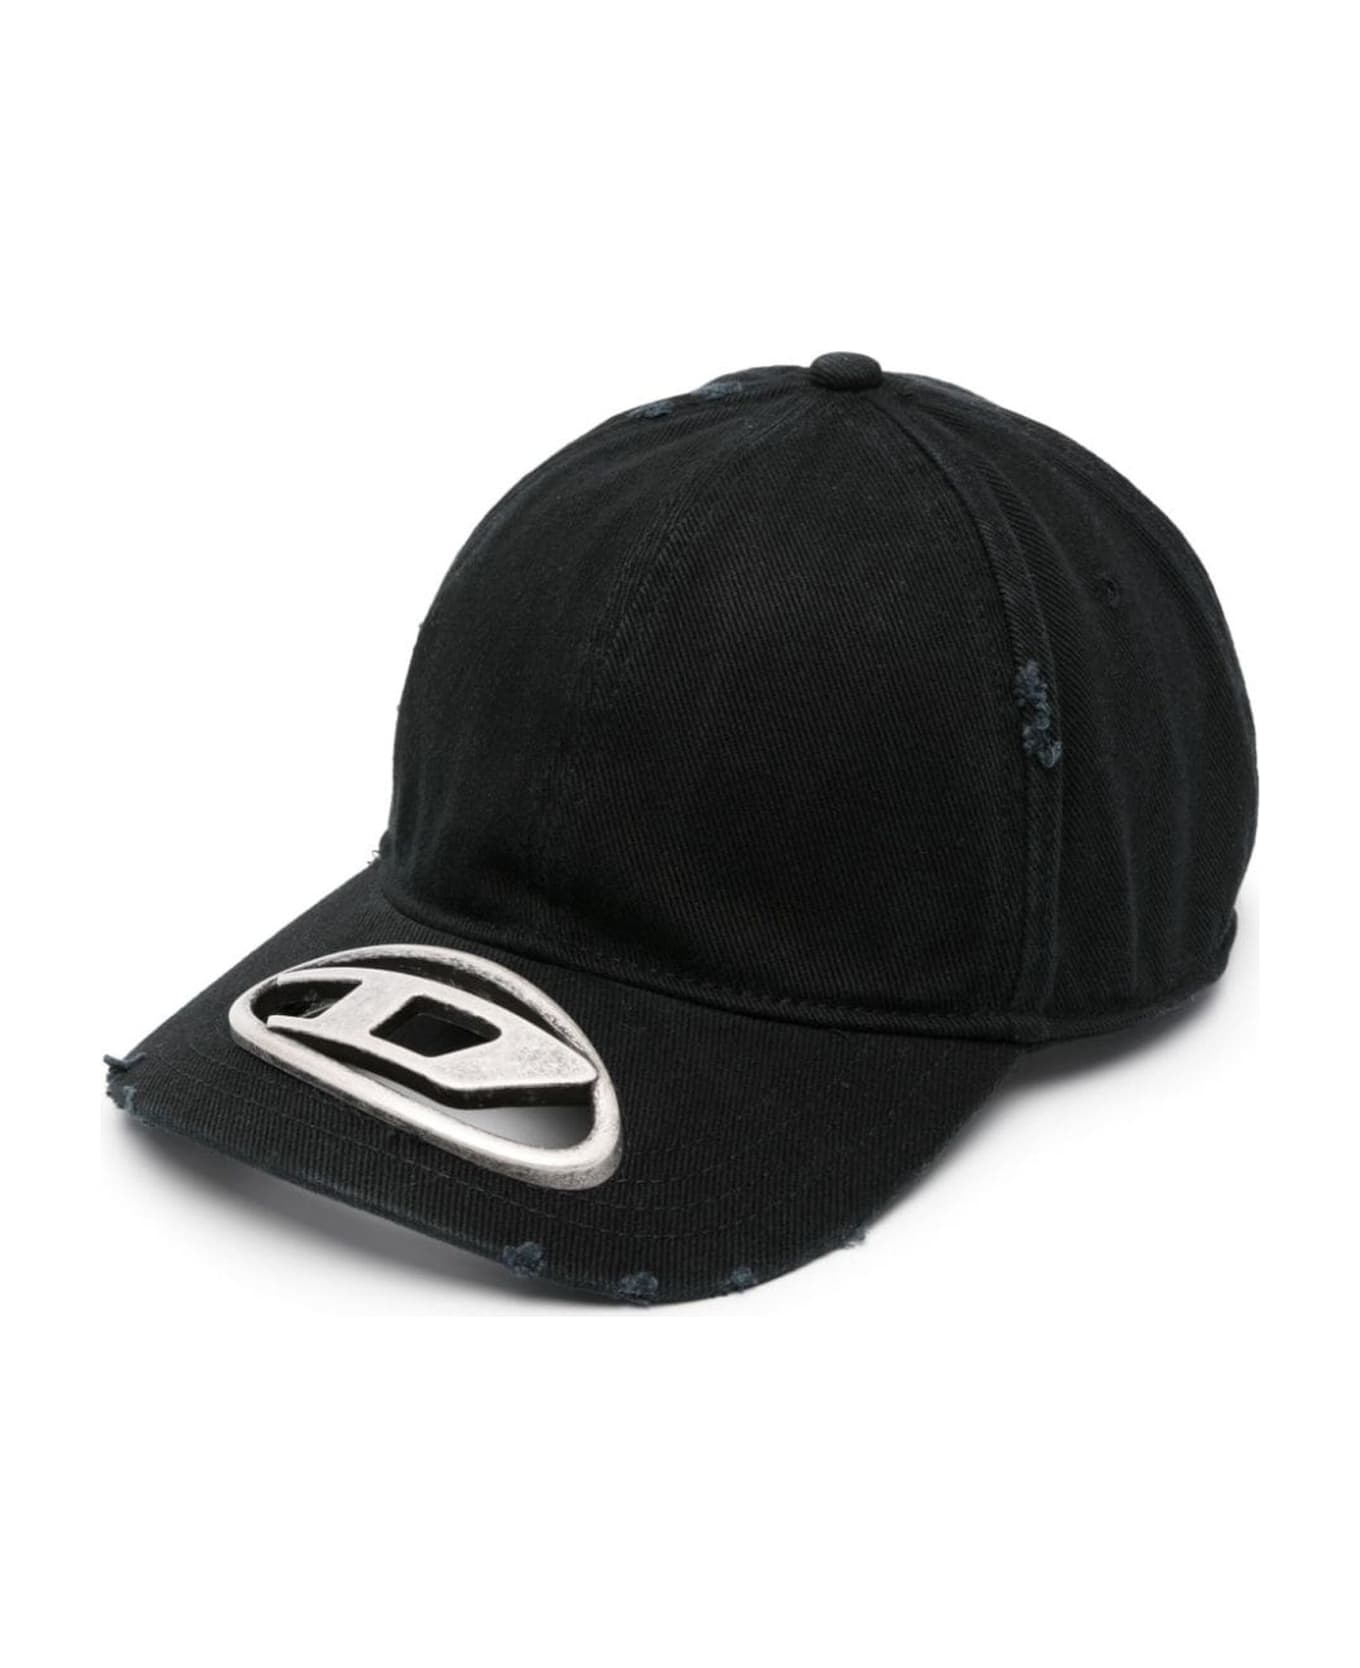 Diesel Hats Black - Black